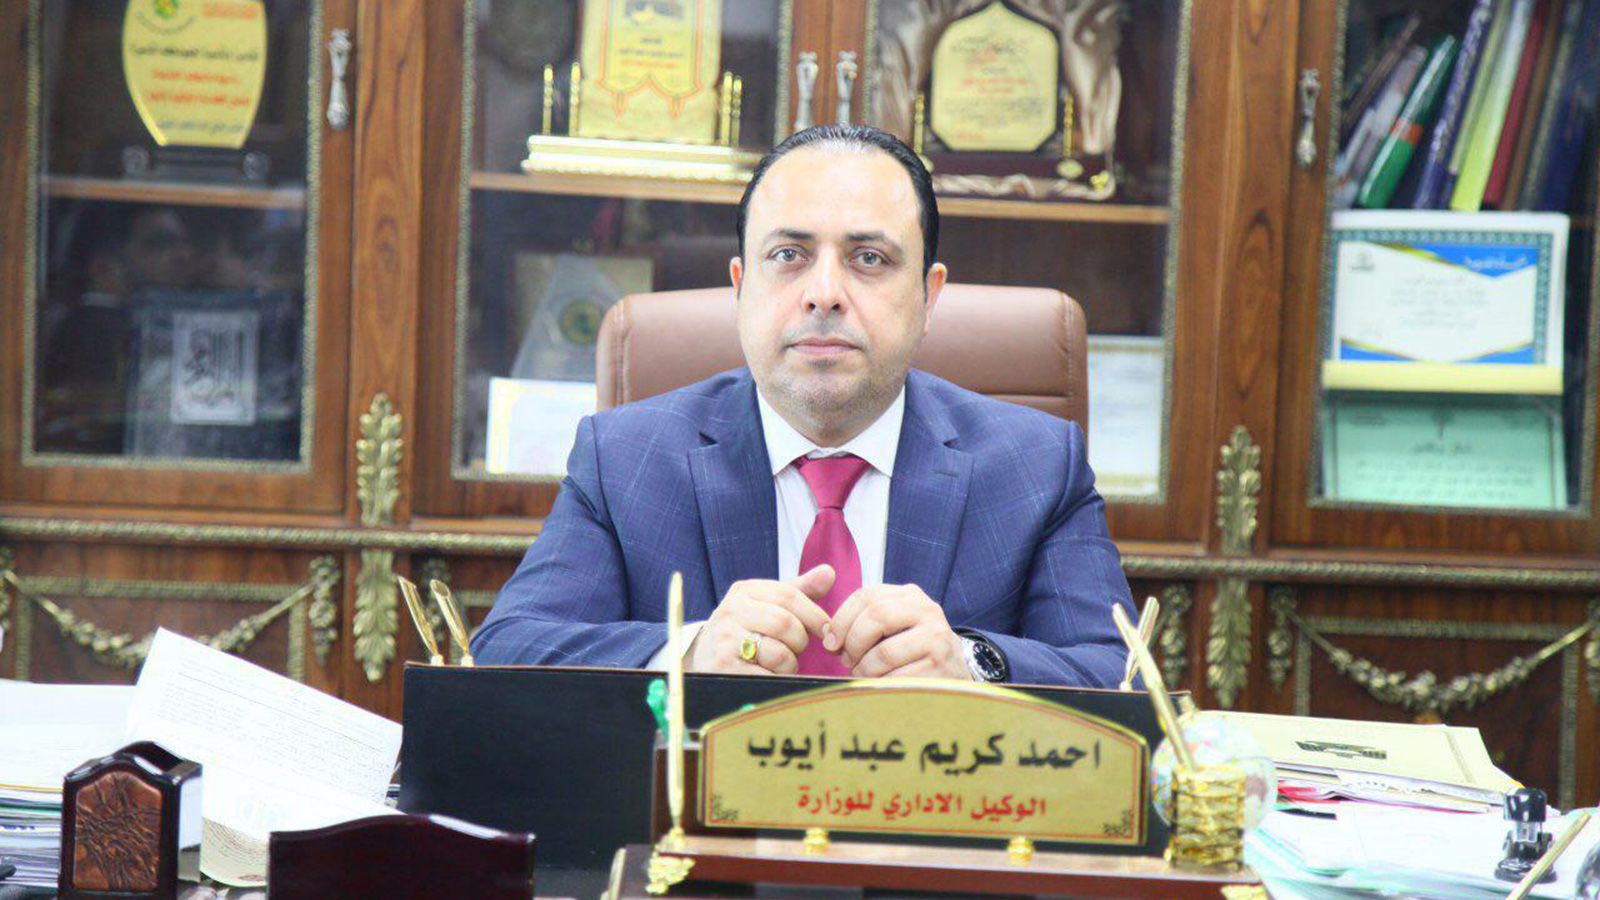 ‪وكيل وزير النقل العراقي تحفظ على الربط السككي مع الكويت‬ (الجزيرة)